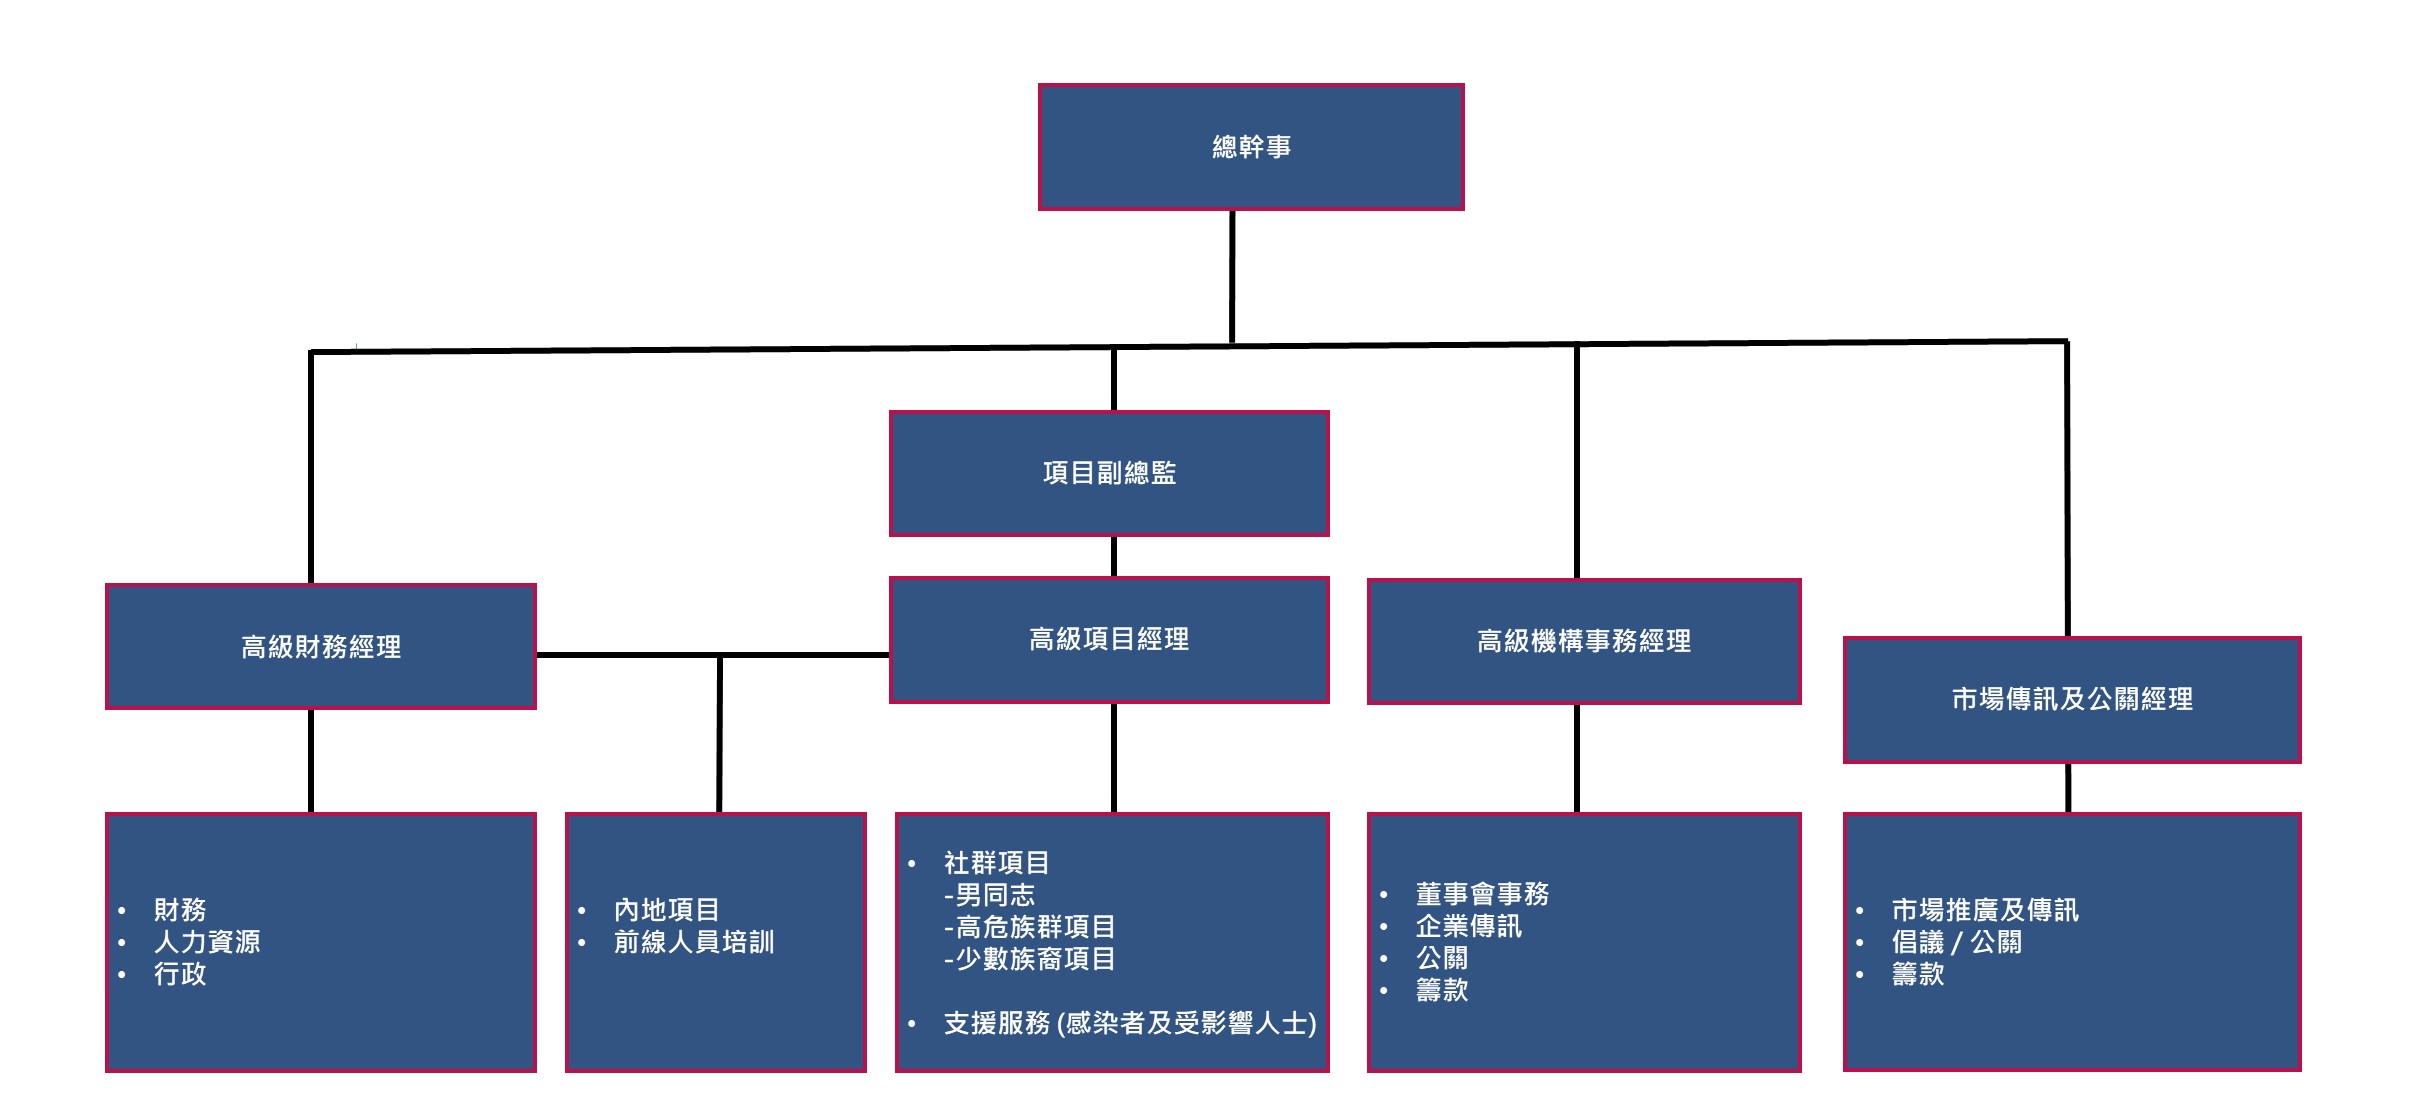 HKAF Organization Chart 20220420_TC